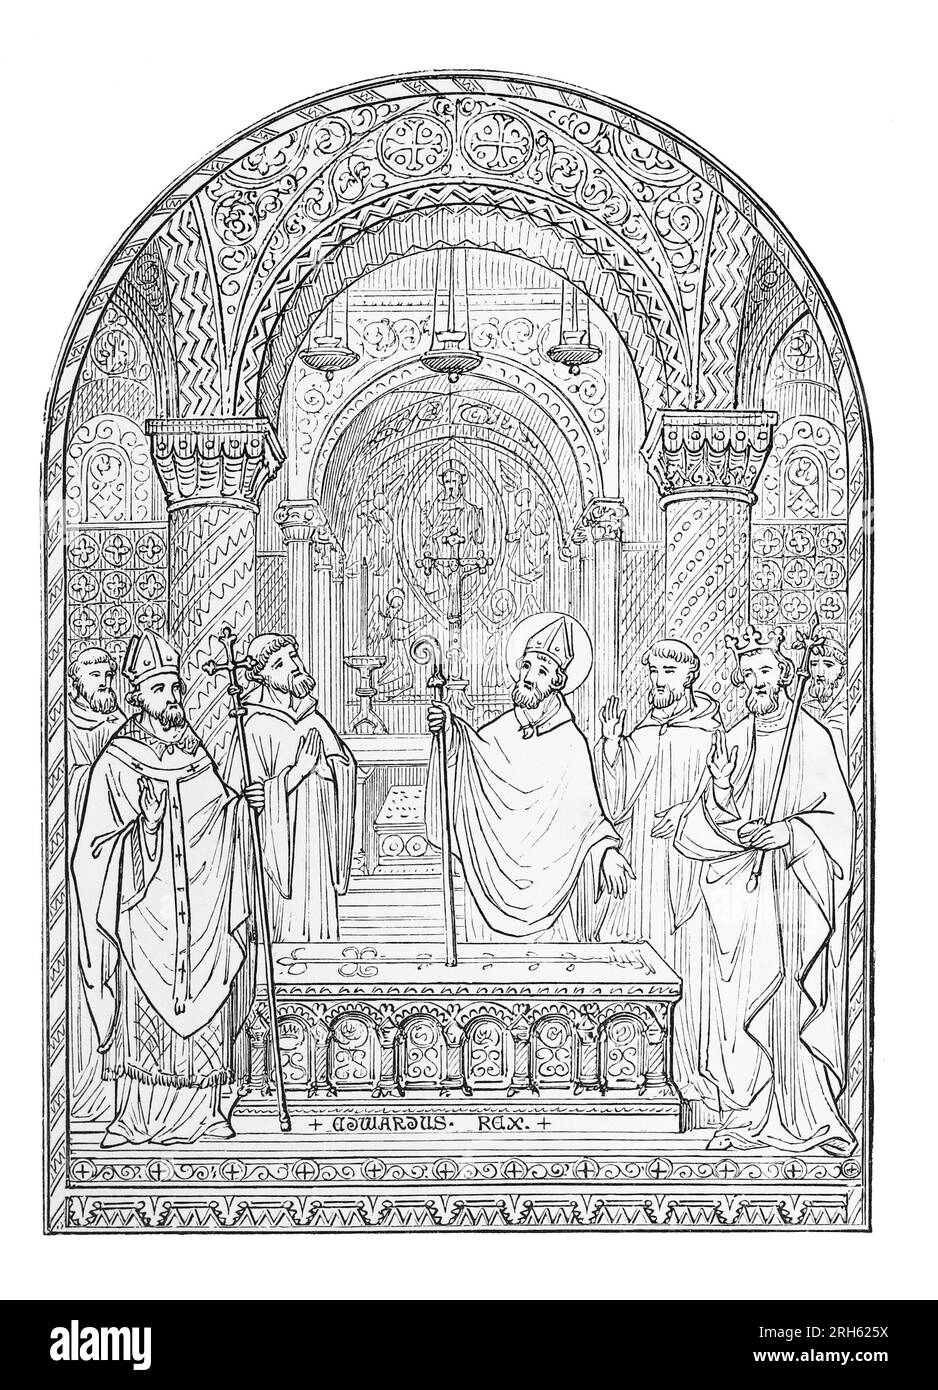 St. Wulstan, Bischof von Worcester von 1062 bis 1095. Aus einem Design von Augustus Welby Northmore Pugin. Gravur aus dem Leben der Heiligen von Sabin Baring-Gould. Stockfoto